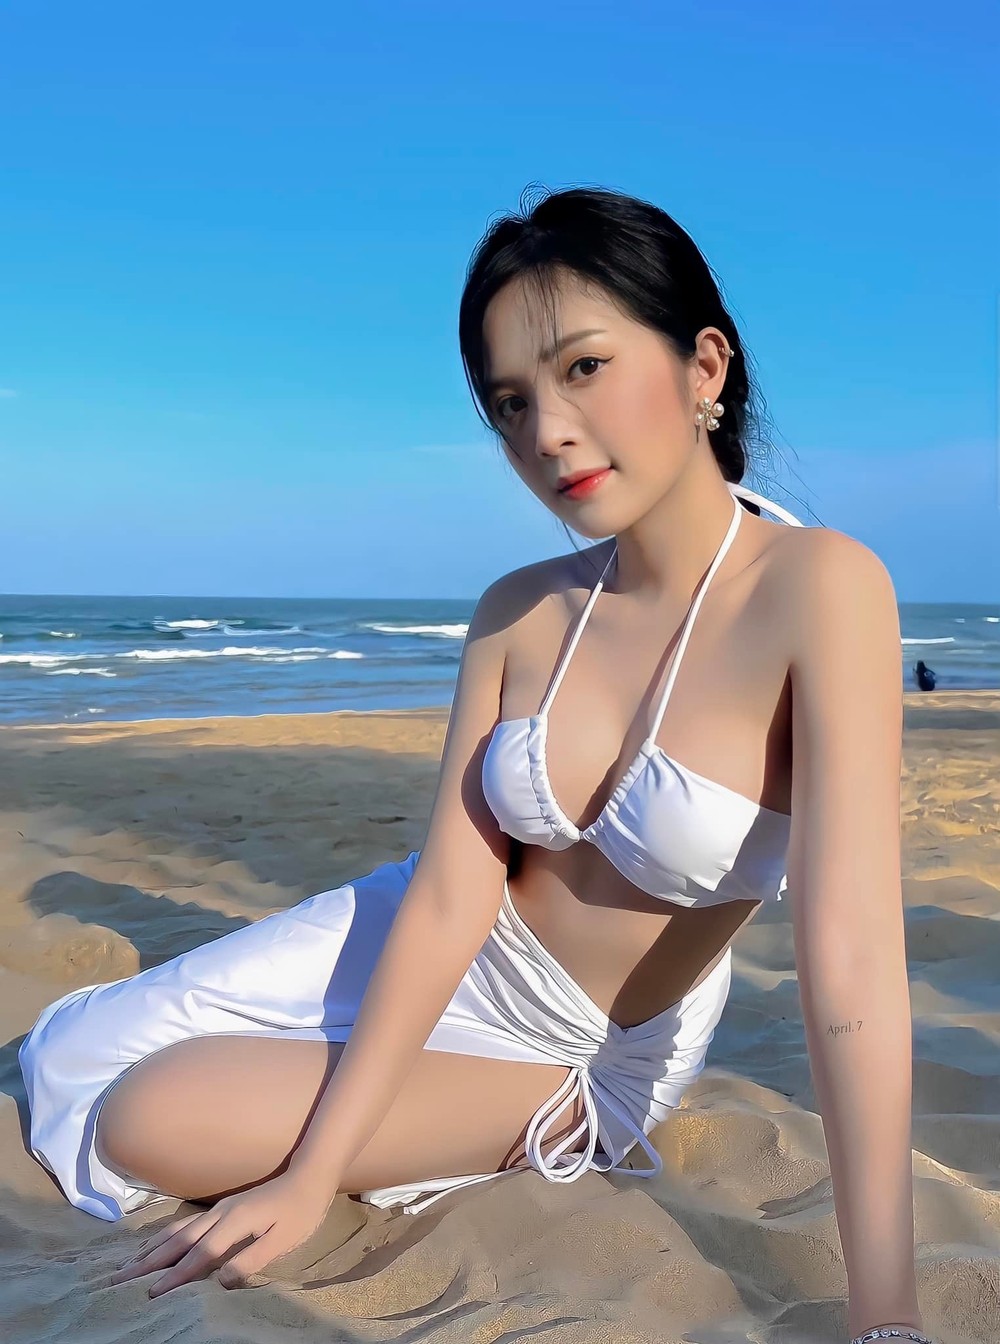 Con gái út NSƯT Hoàng Hải khoe vẻ gợi cảm với bikini - Ảnh 4.